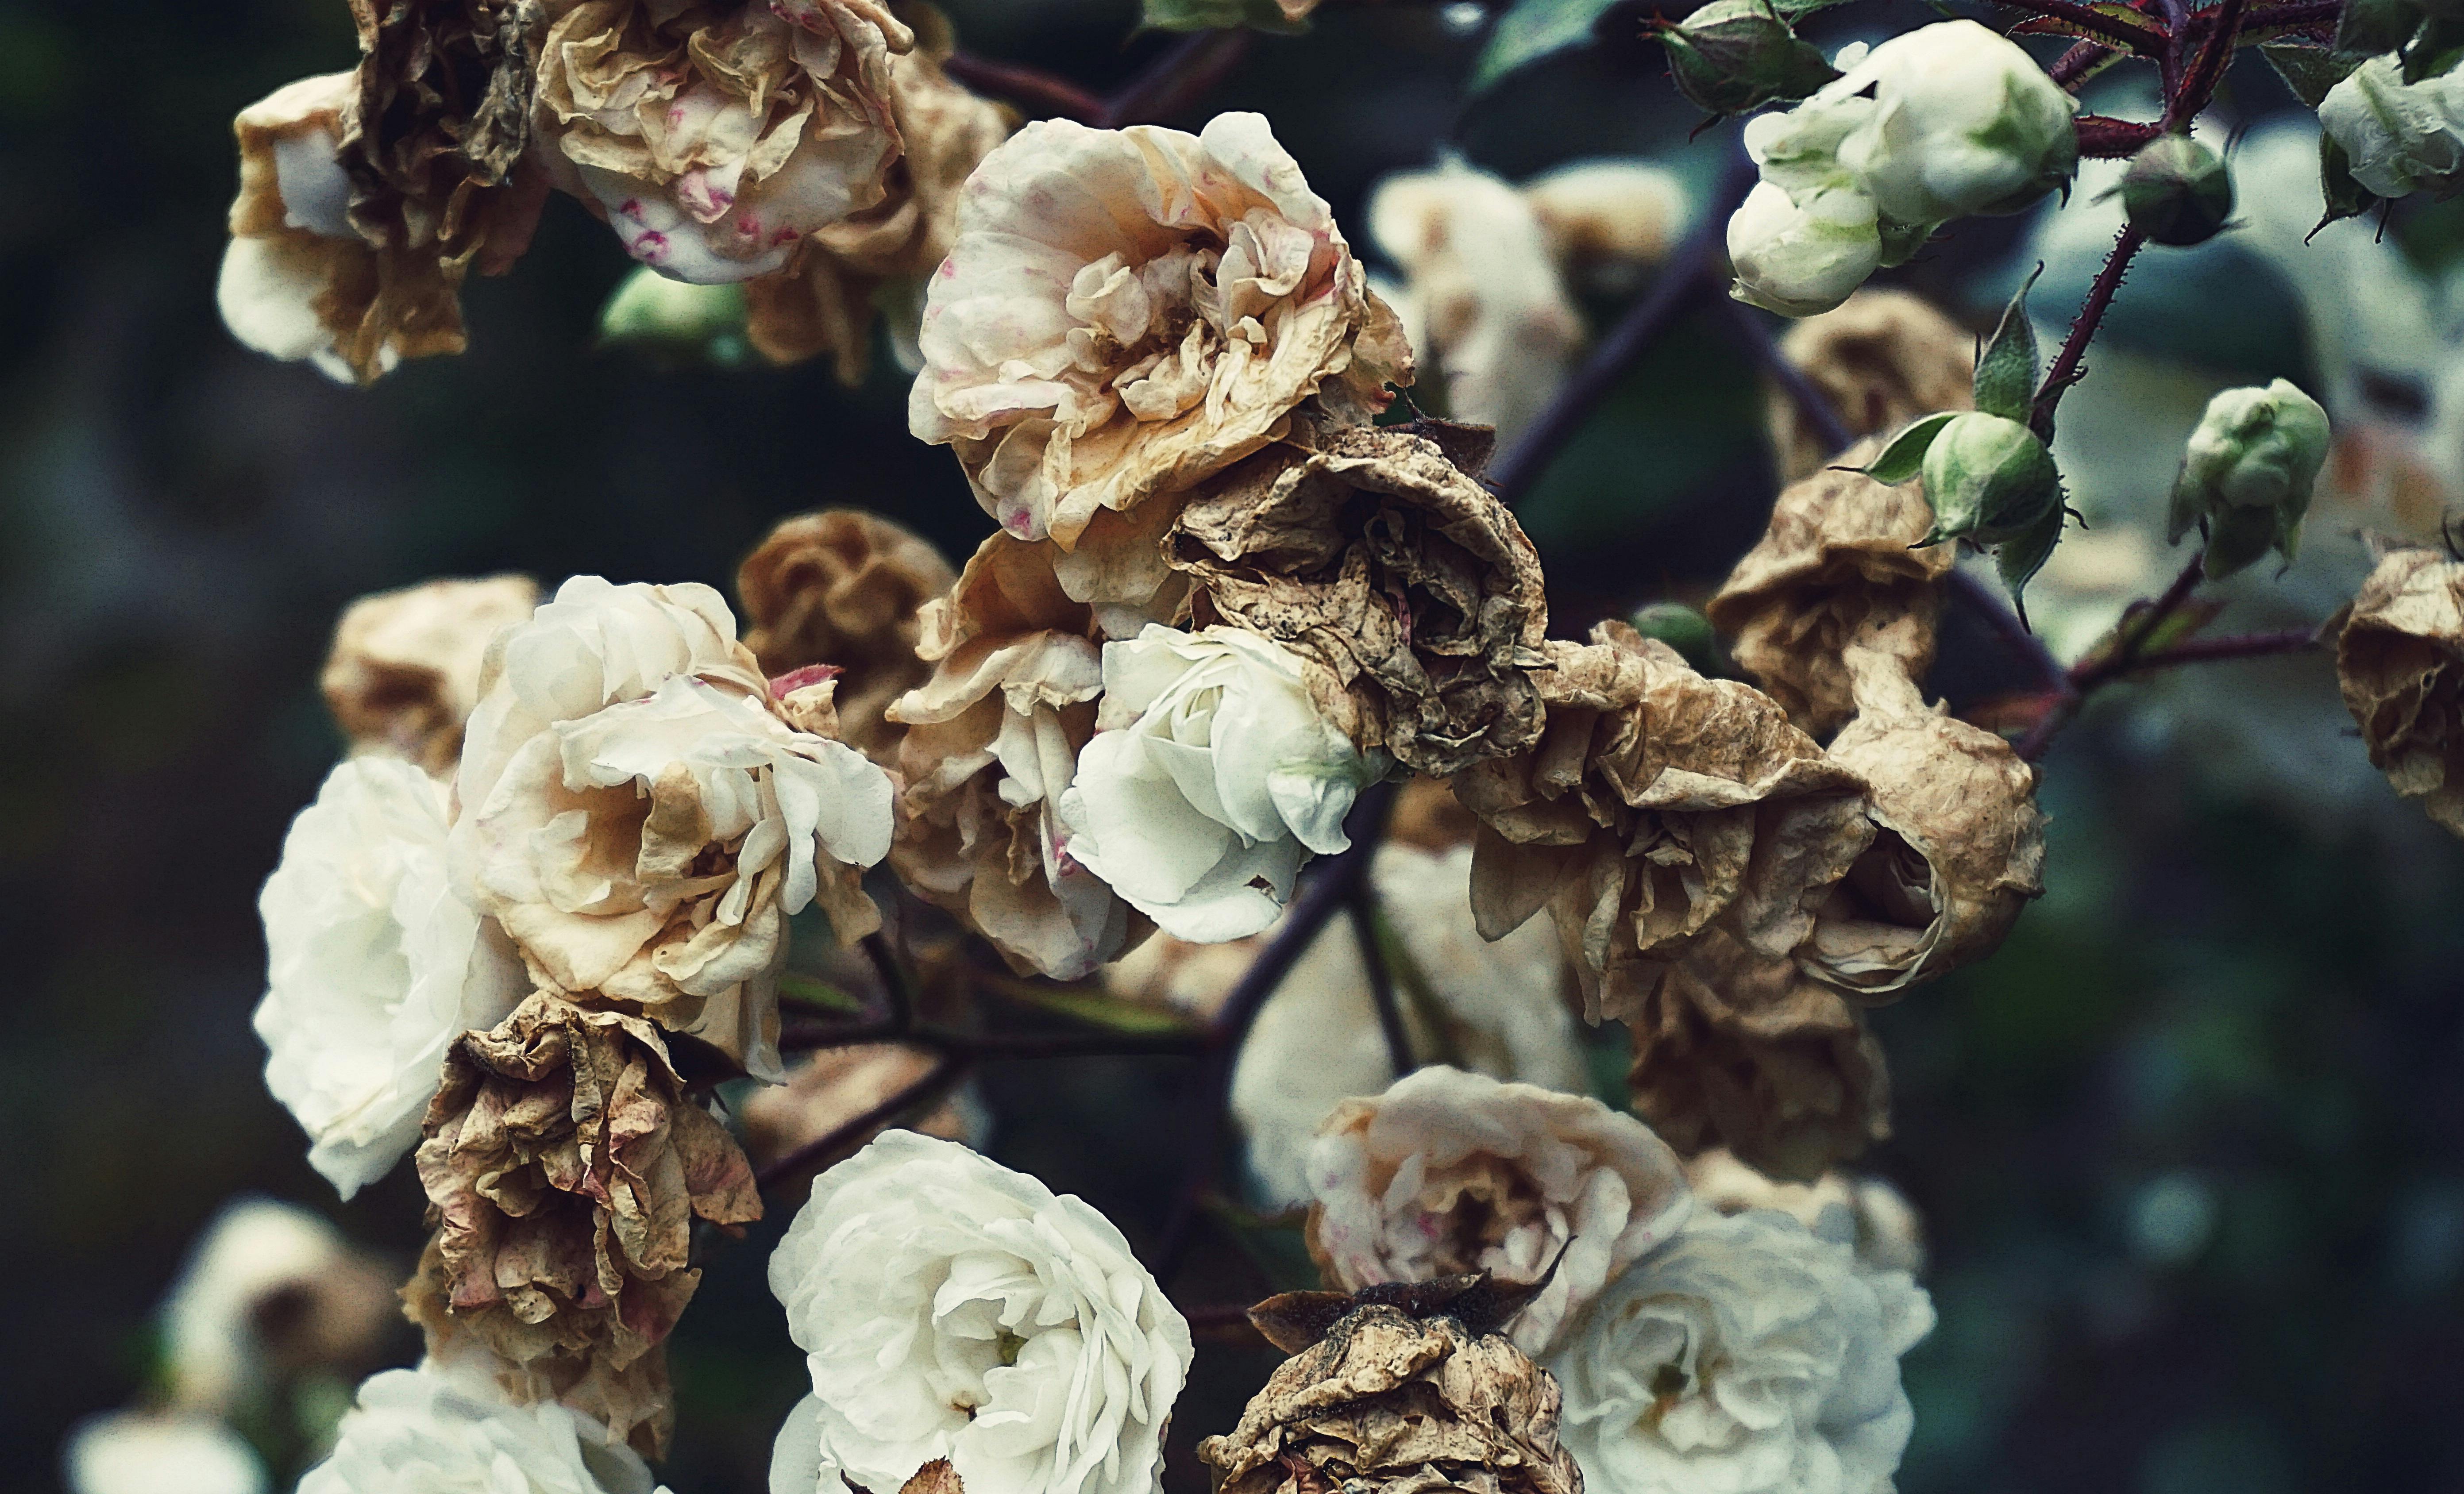 白と茶色の花びらの花のクローズアップ写真 無料の写真素材